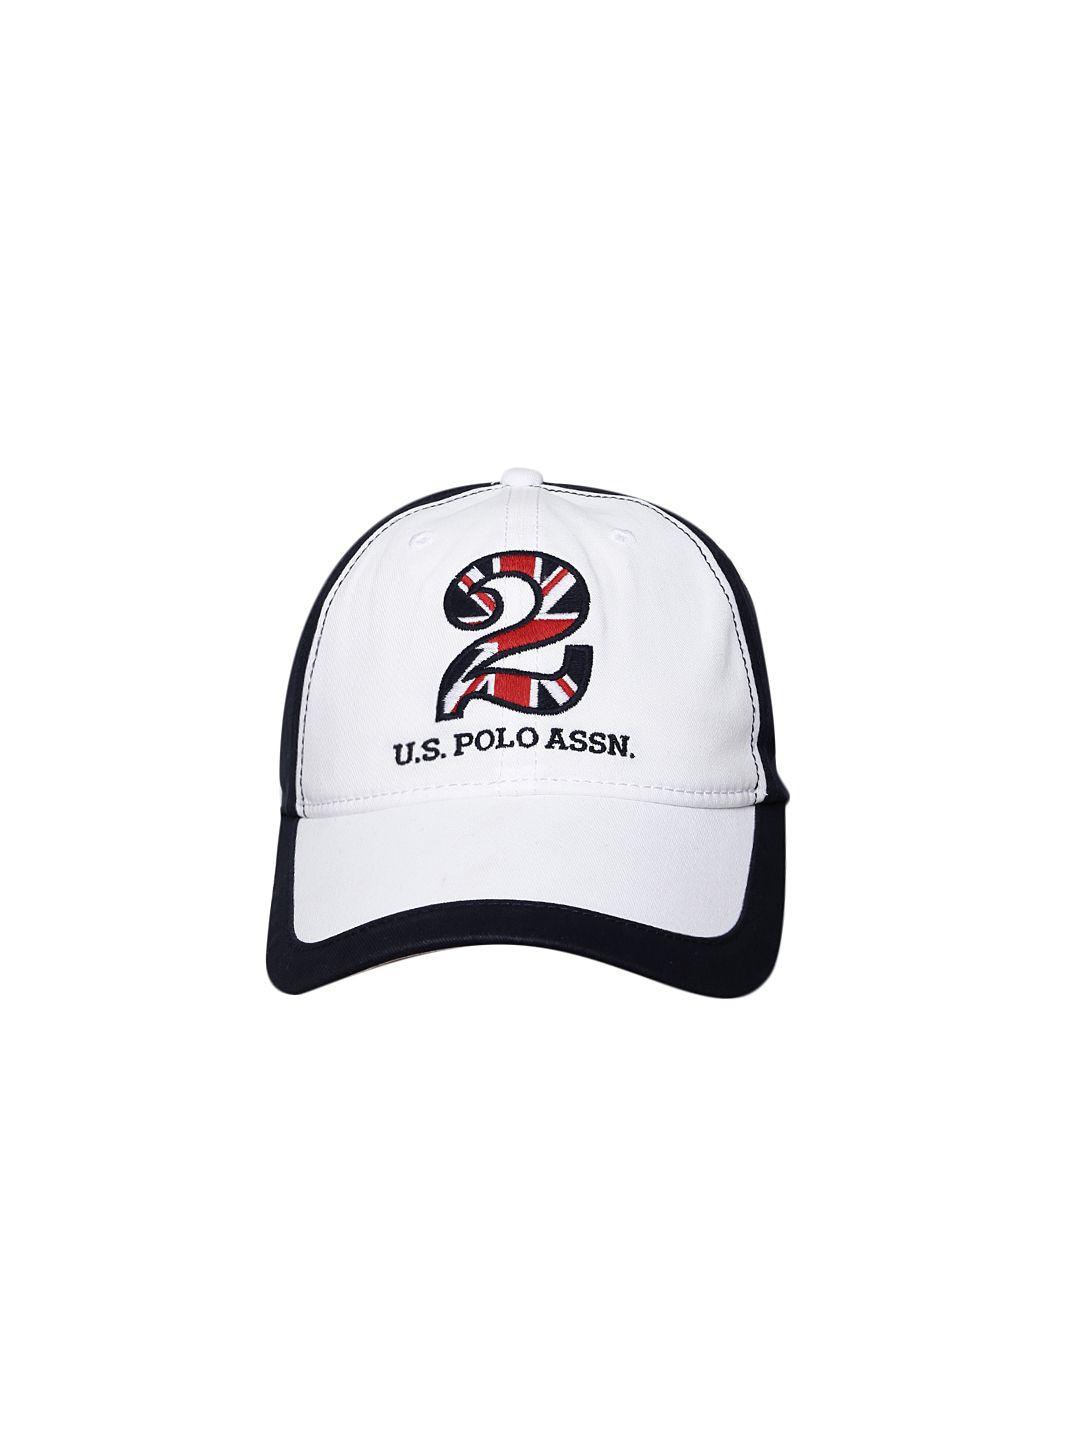 u.s.-polo-assn.-men-navy-blue-&-white-colourblocked-baseball-cap